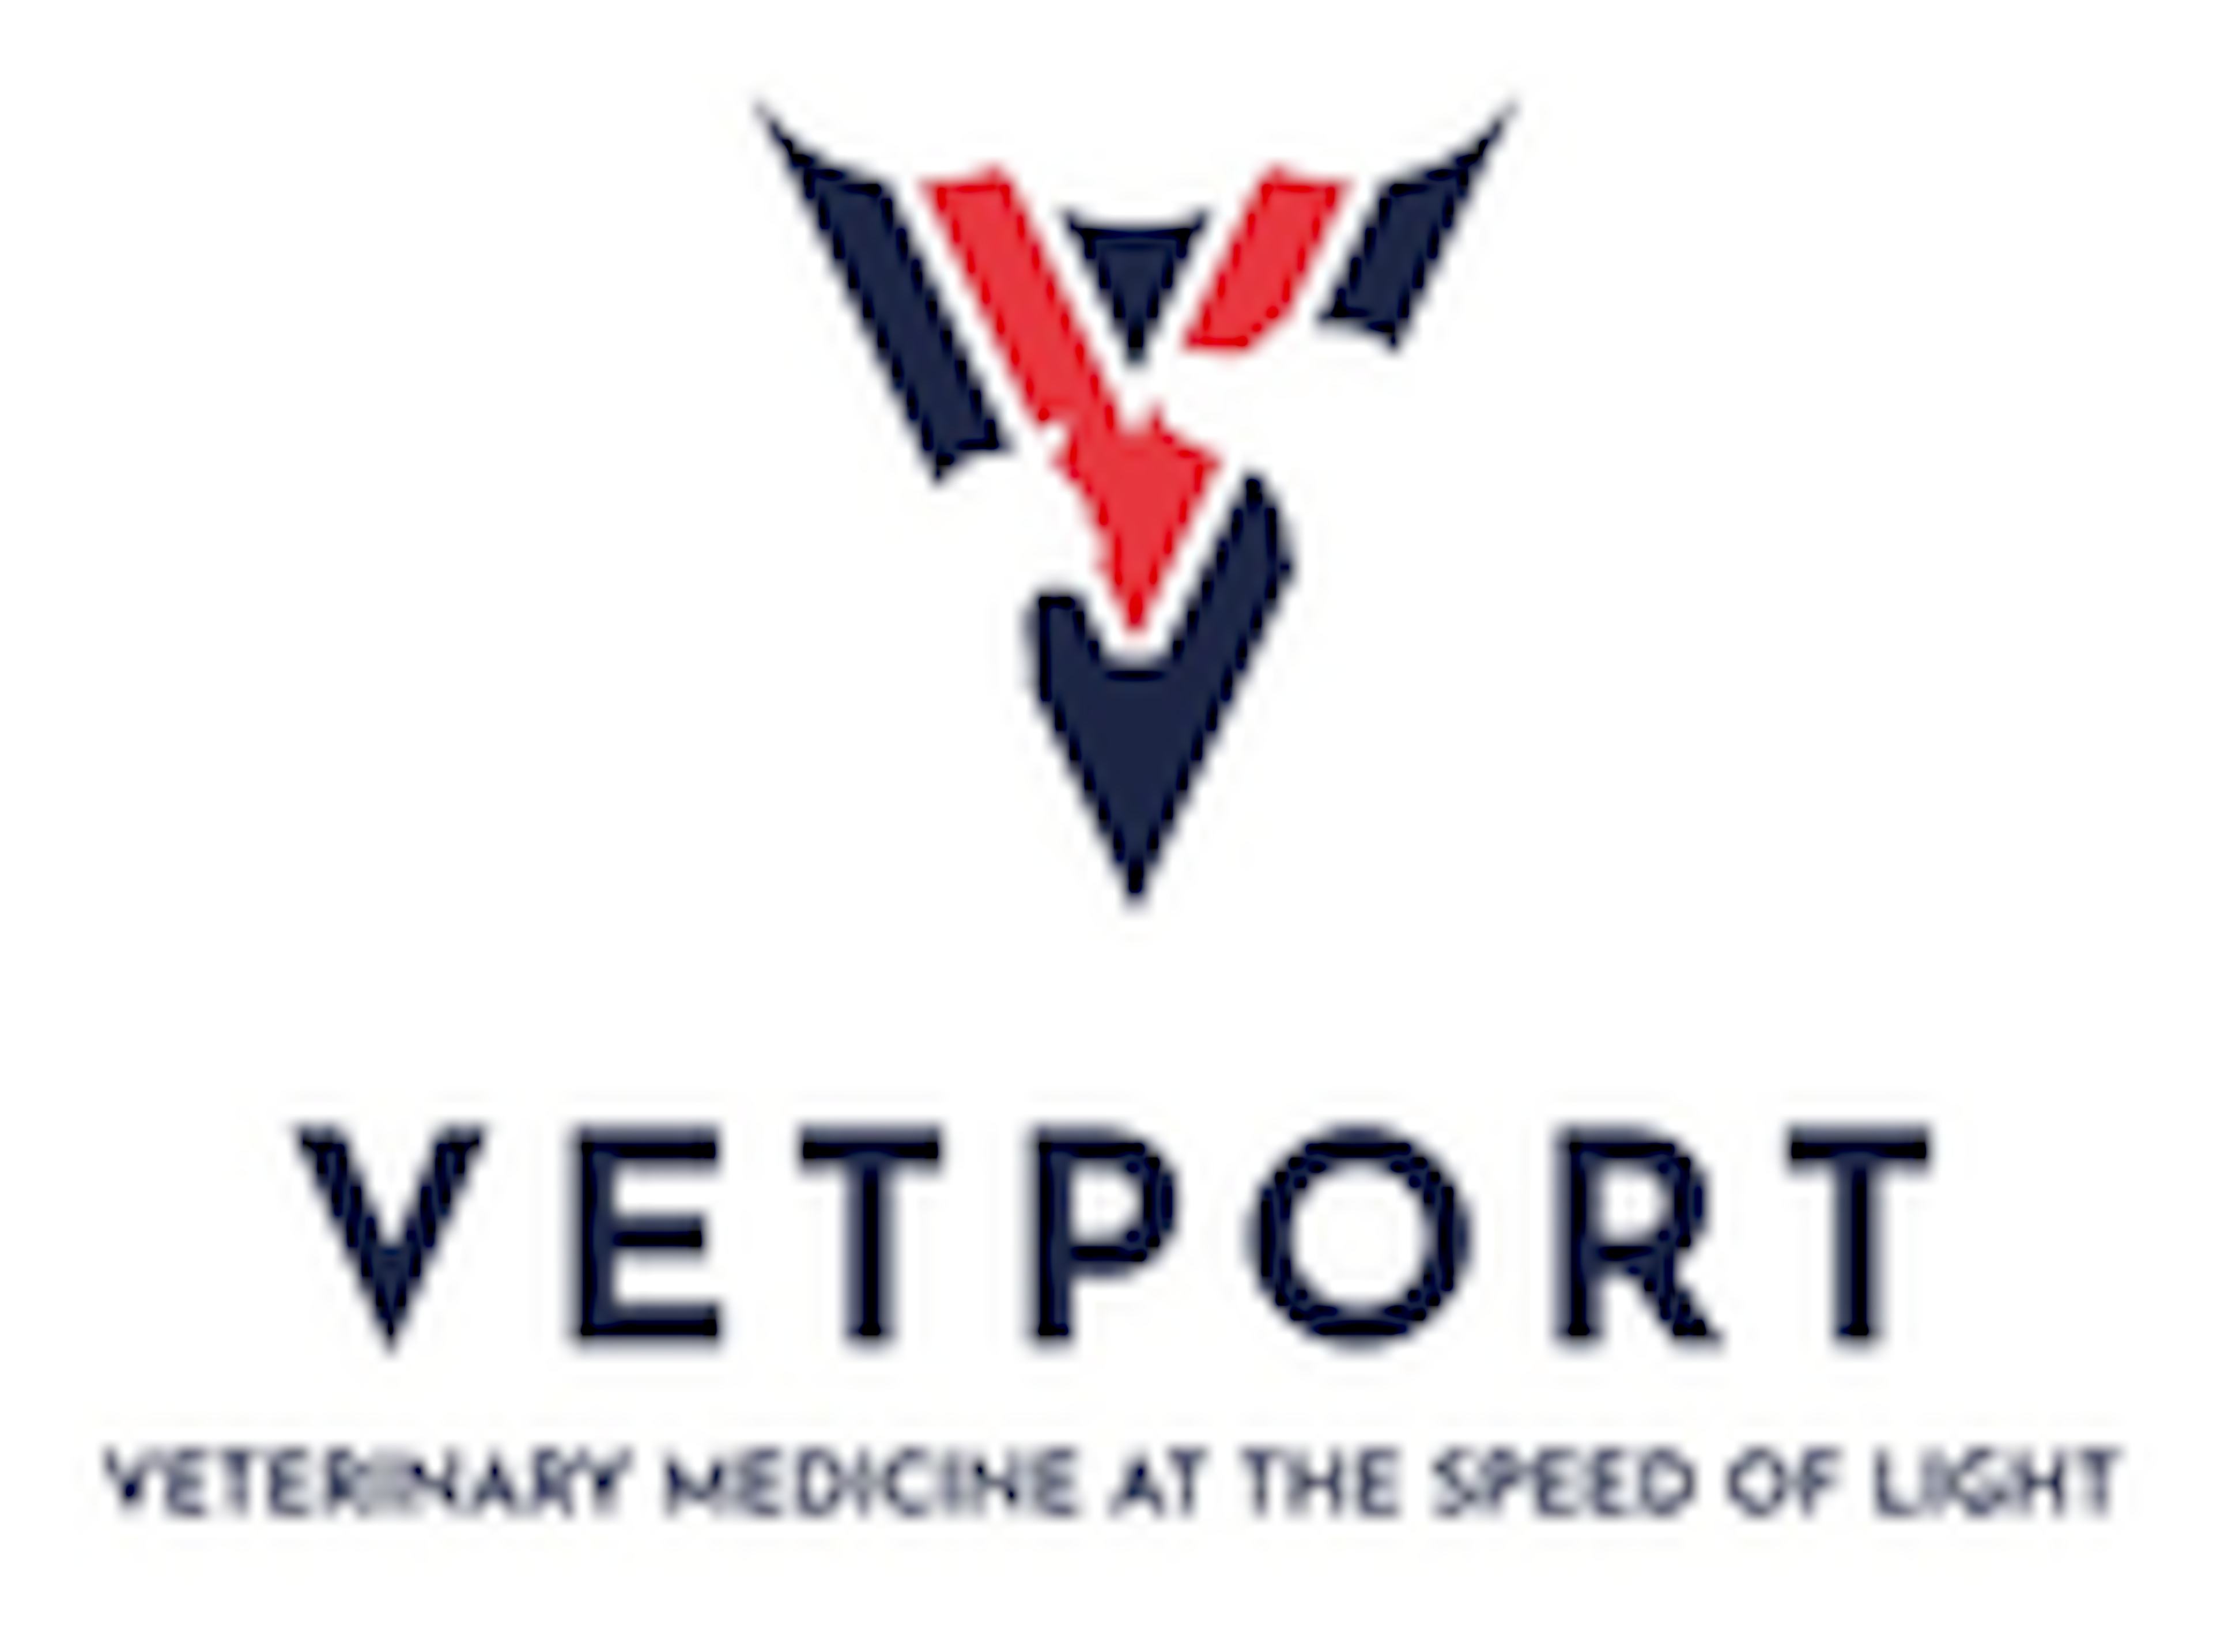 Vetport Logo